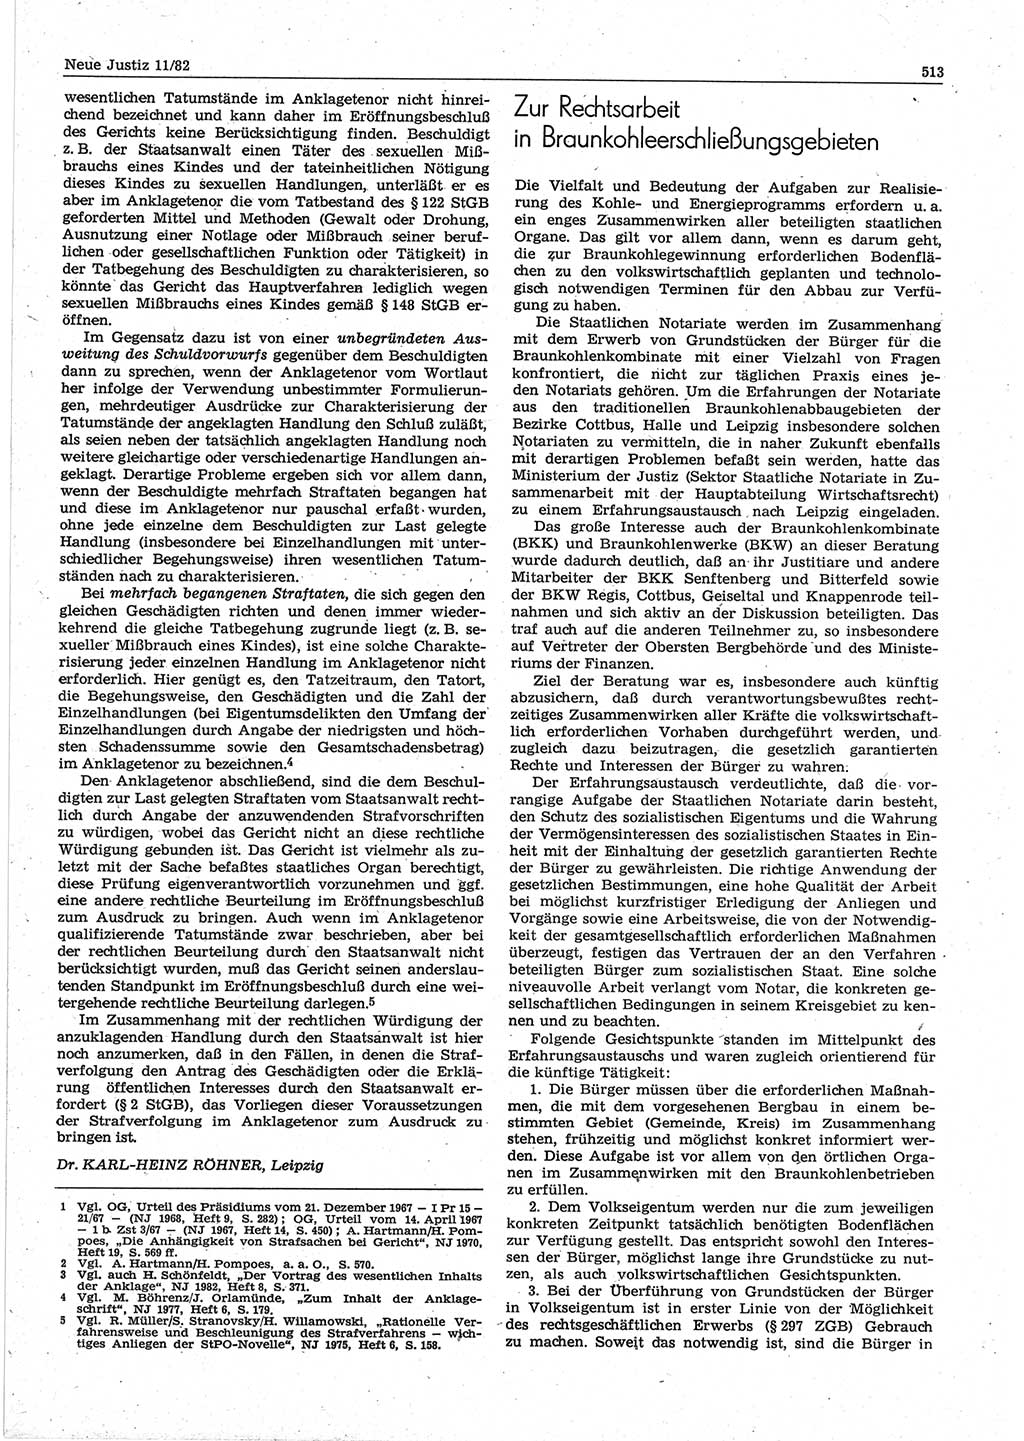 Neue Justiz (NJ), Zeitschrift für sozialistisches Recht und Gesetzlichkeit [Deutsche Demokratische Republik (DDR)], 36. Jahrgang 1982, Seite 513 (NJ DDR 1982, S. 513)